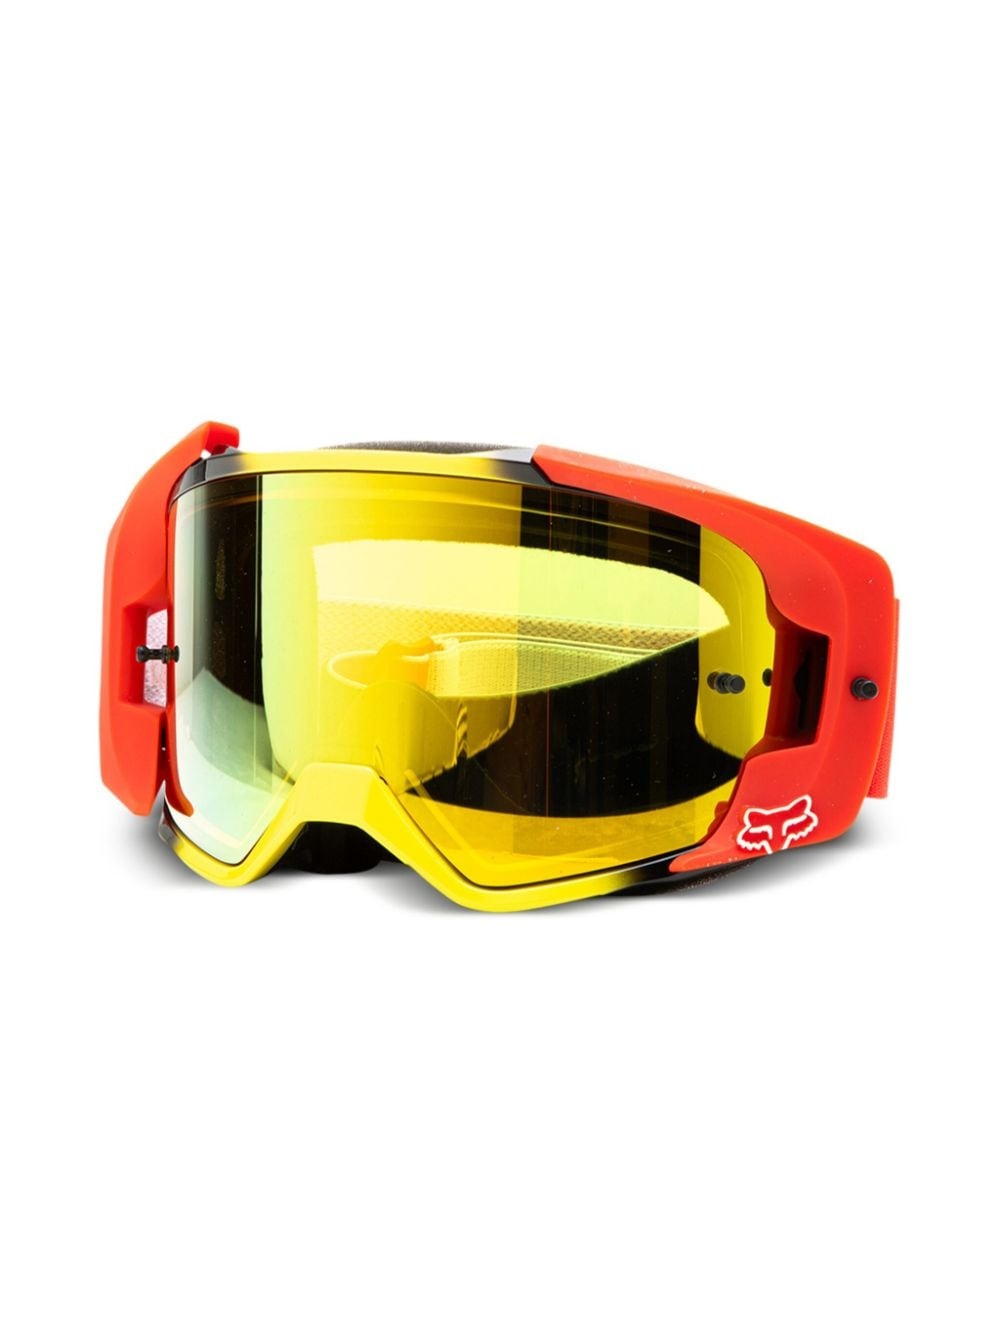 x Honda x Fox Racing Vue goggles - 2